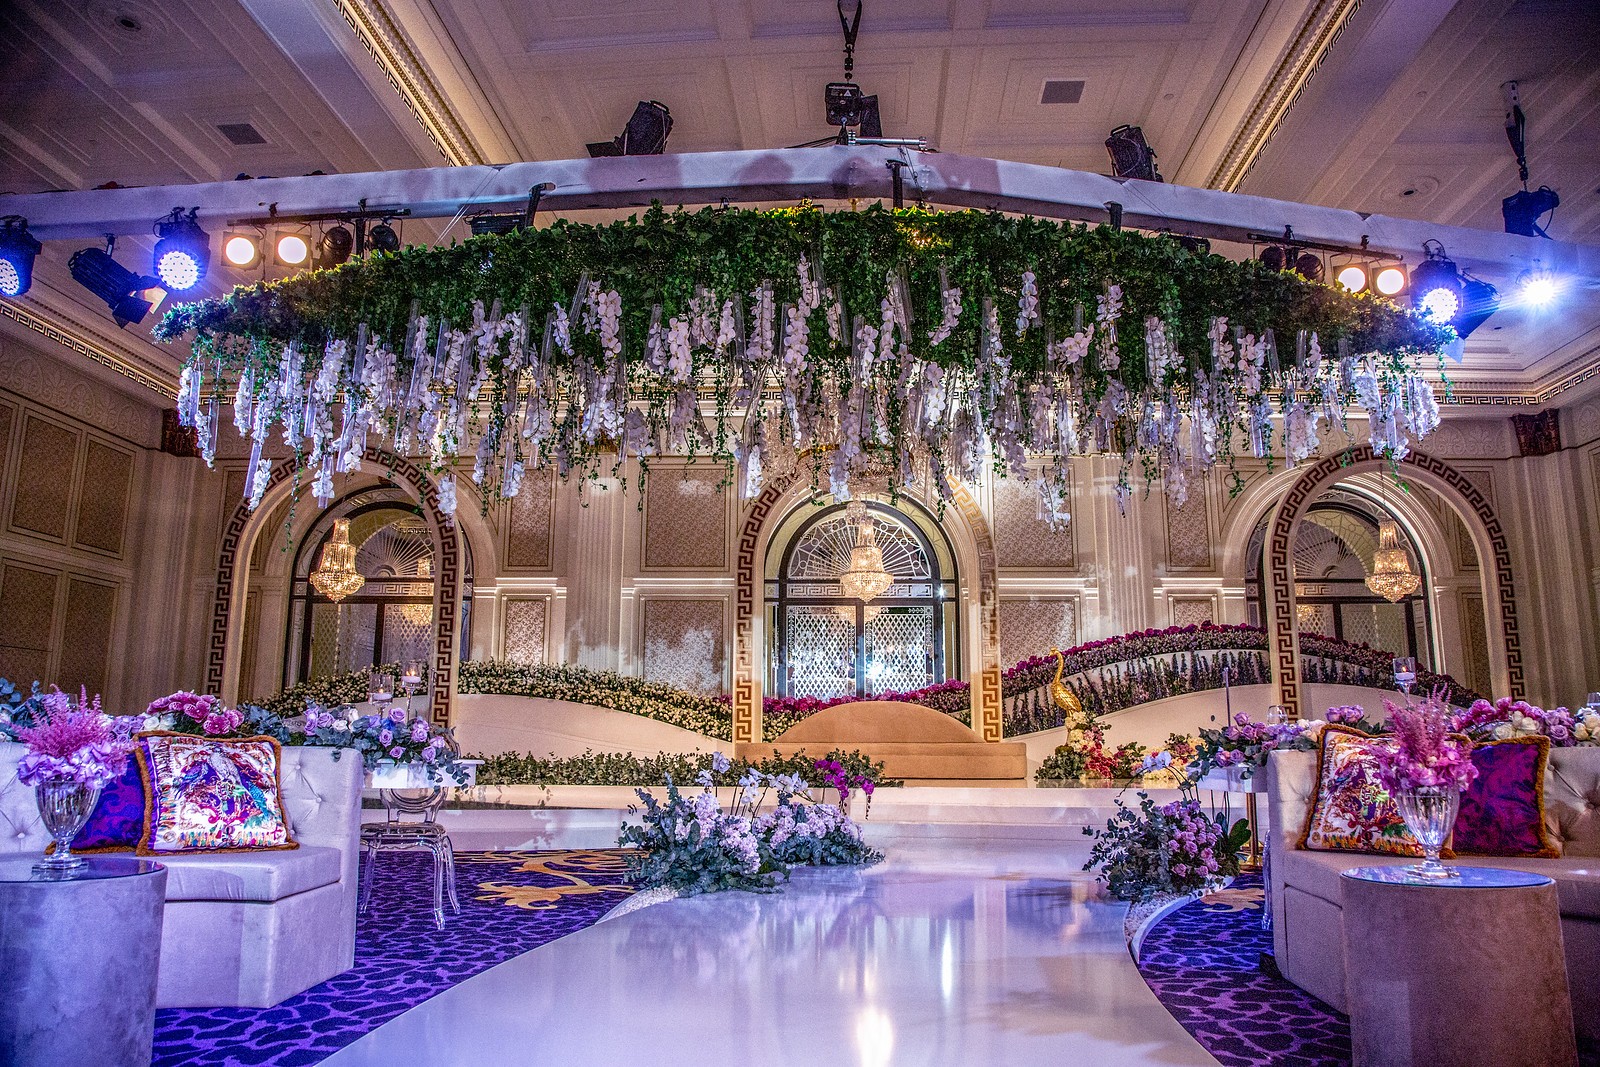 Event Chic Designs luxury ballroom wedding set up 